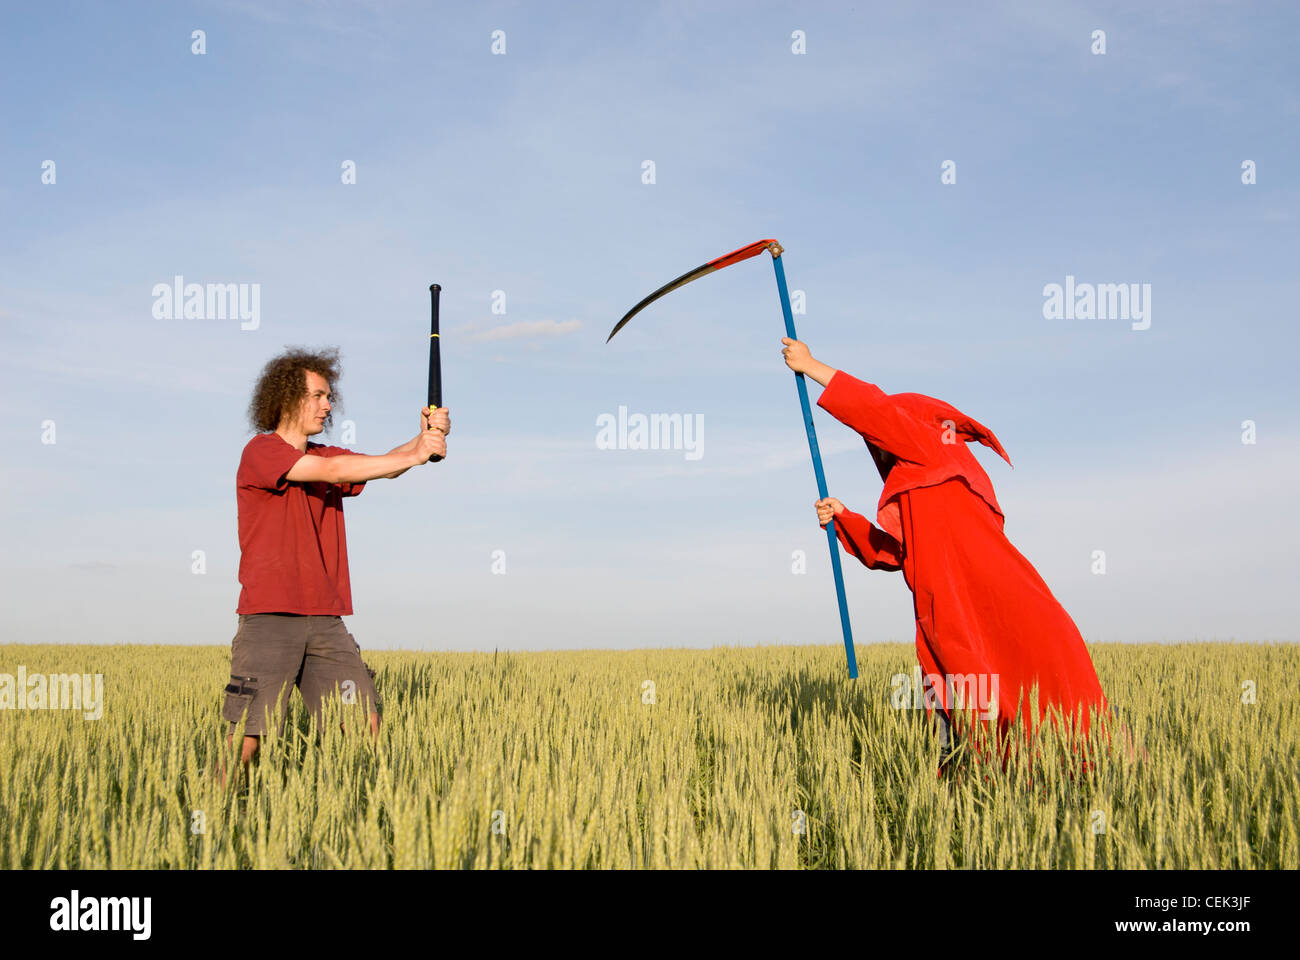 Giovane uomo con la mazza da baseball lottando contro la morte (Grim Reaper) con la falce Foto Stock